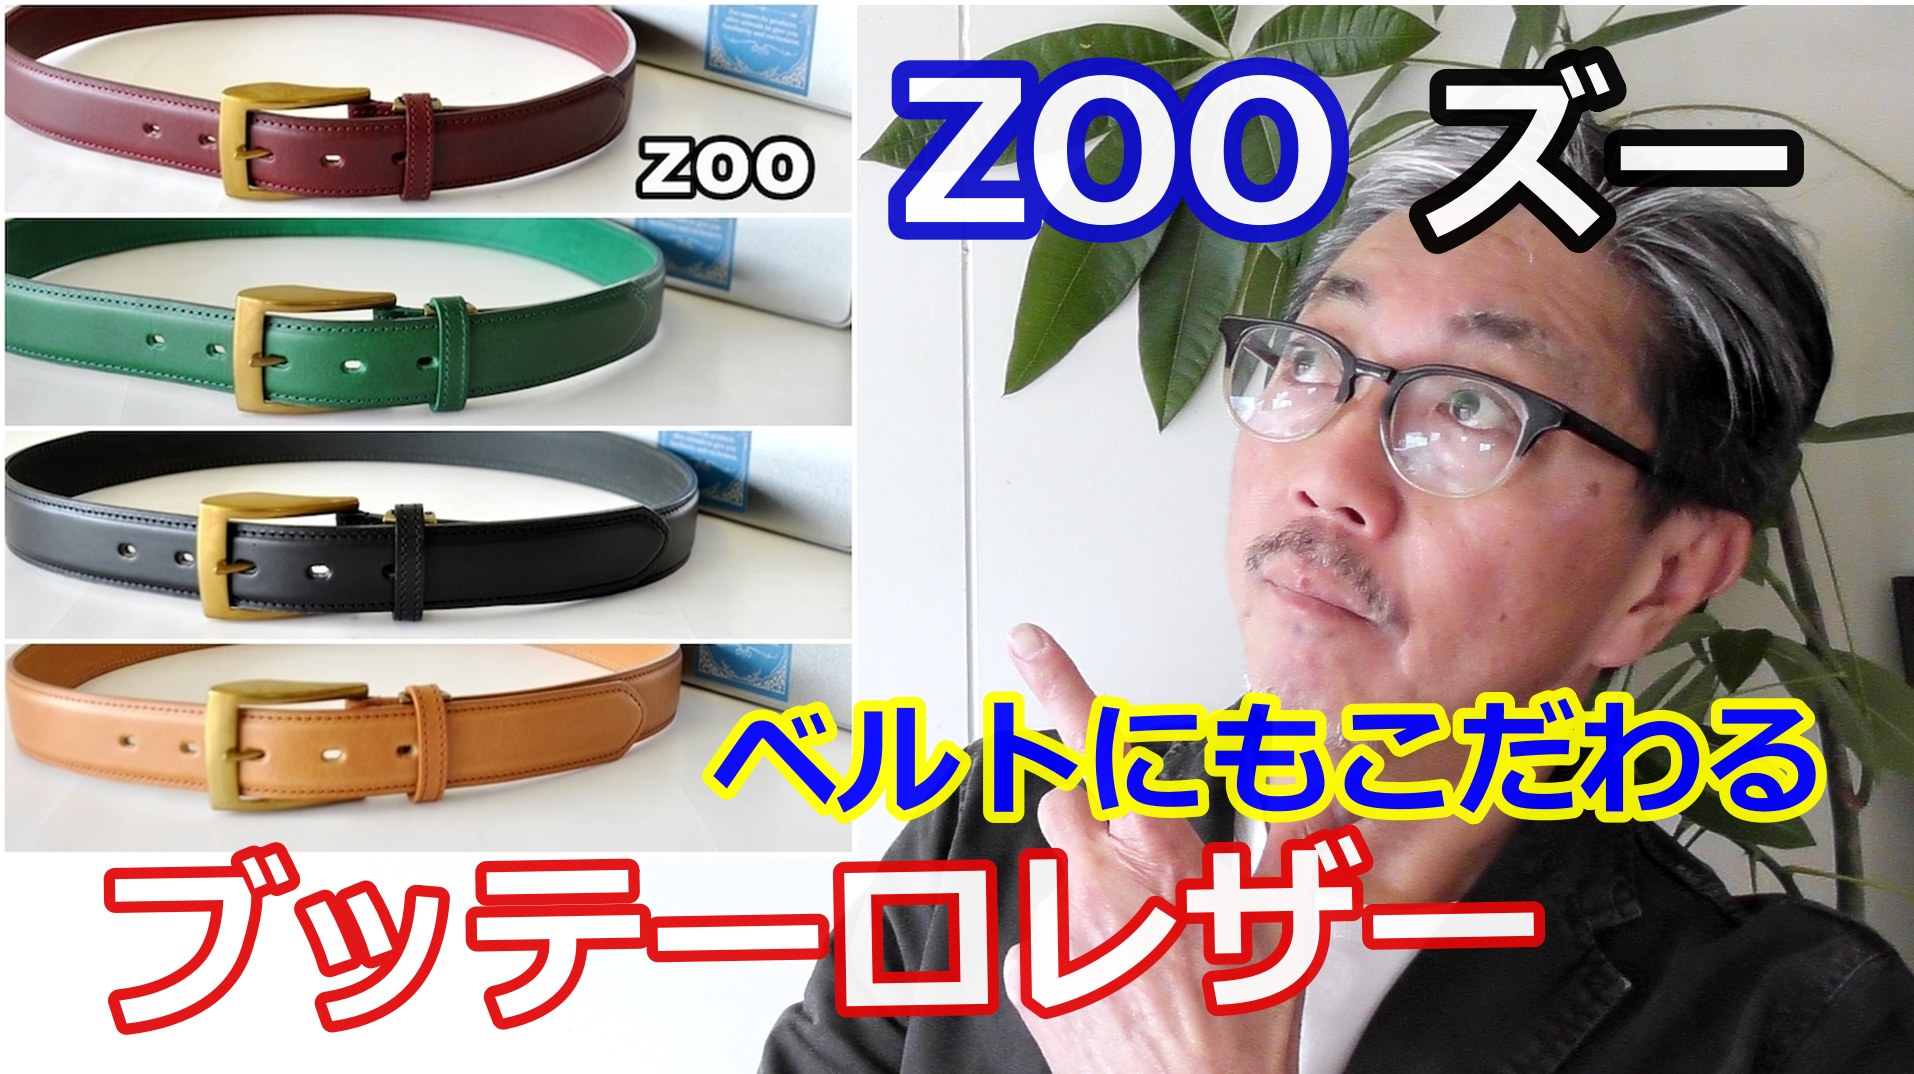 イタリアのブッテーロレザーと日本のレザーメーカーZOO（ズー）とのコラボされたベルト